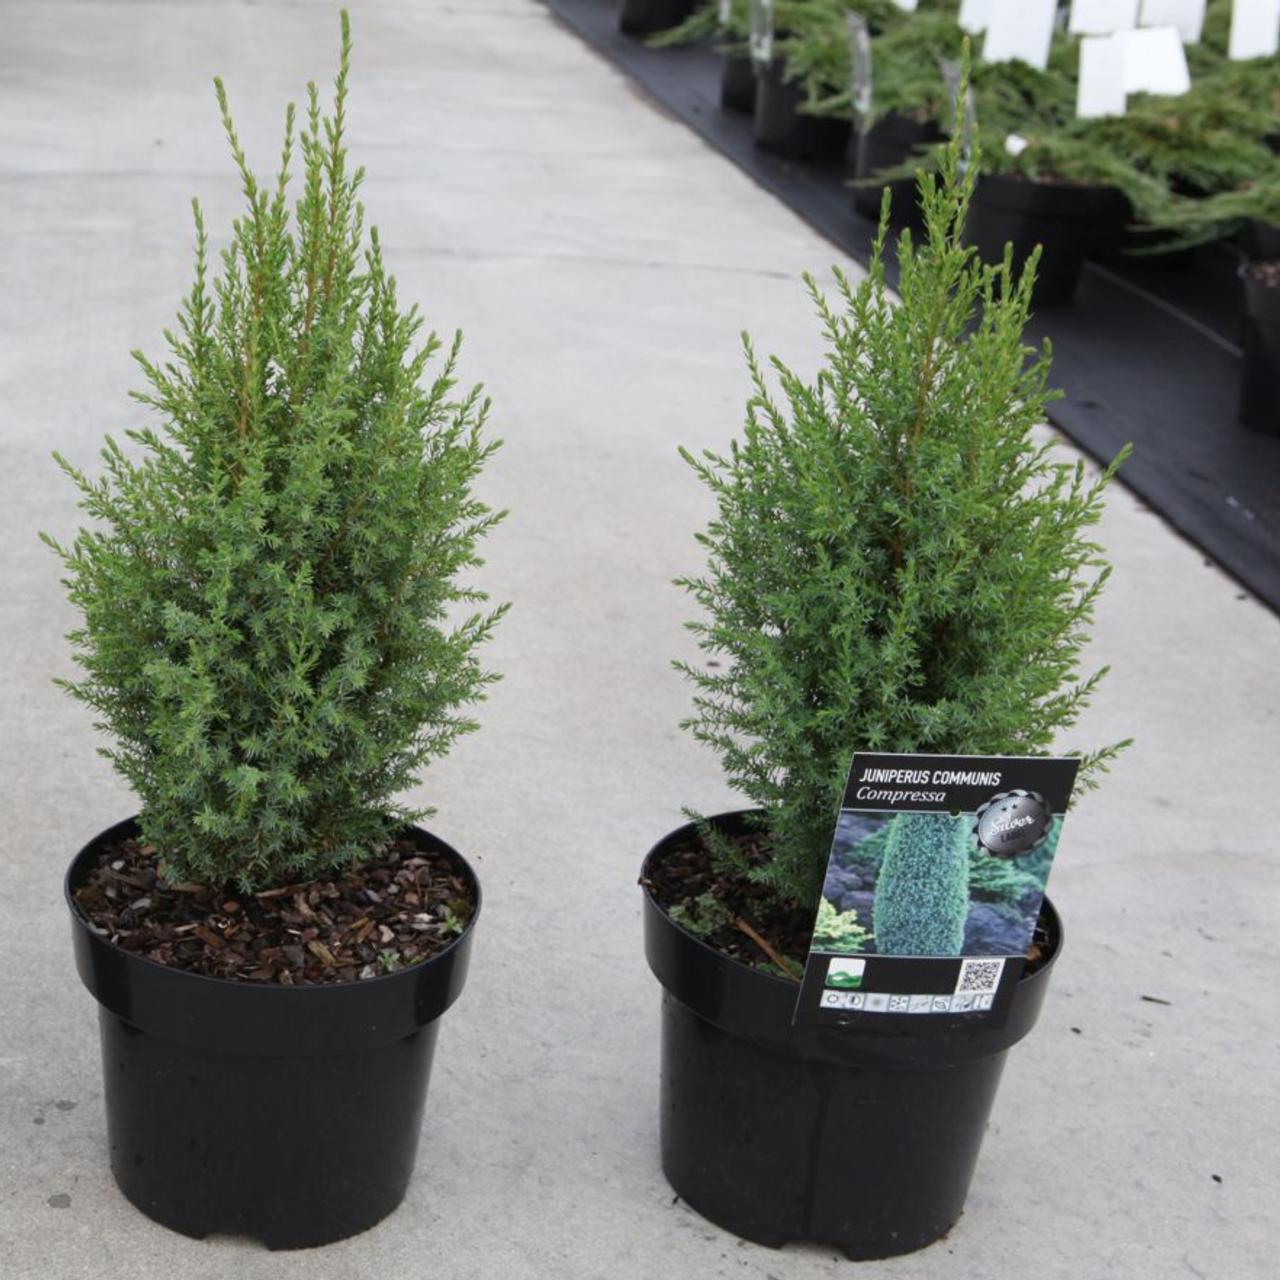 Juniperus communis 'Compressa' plant